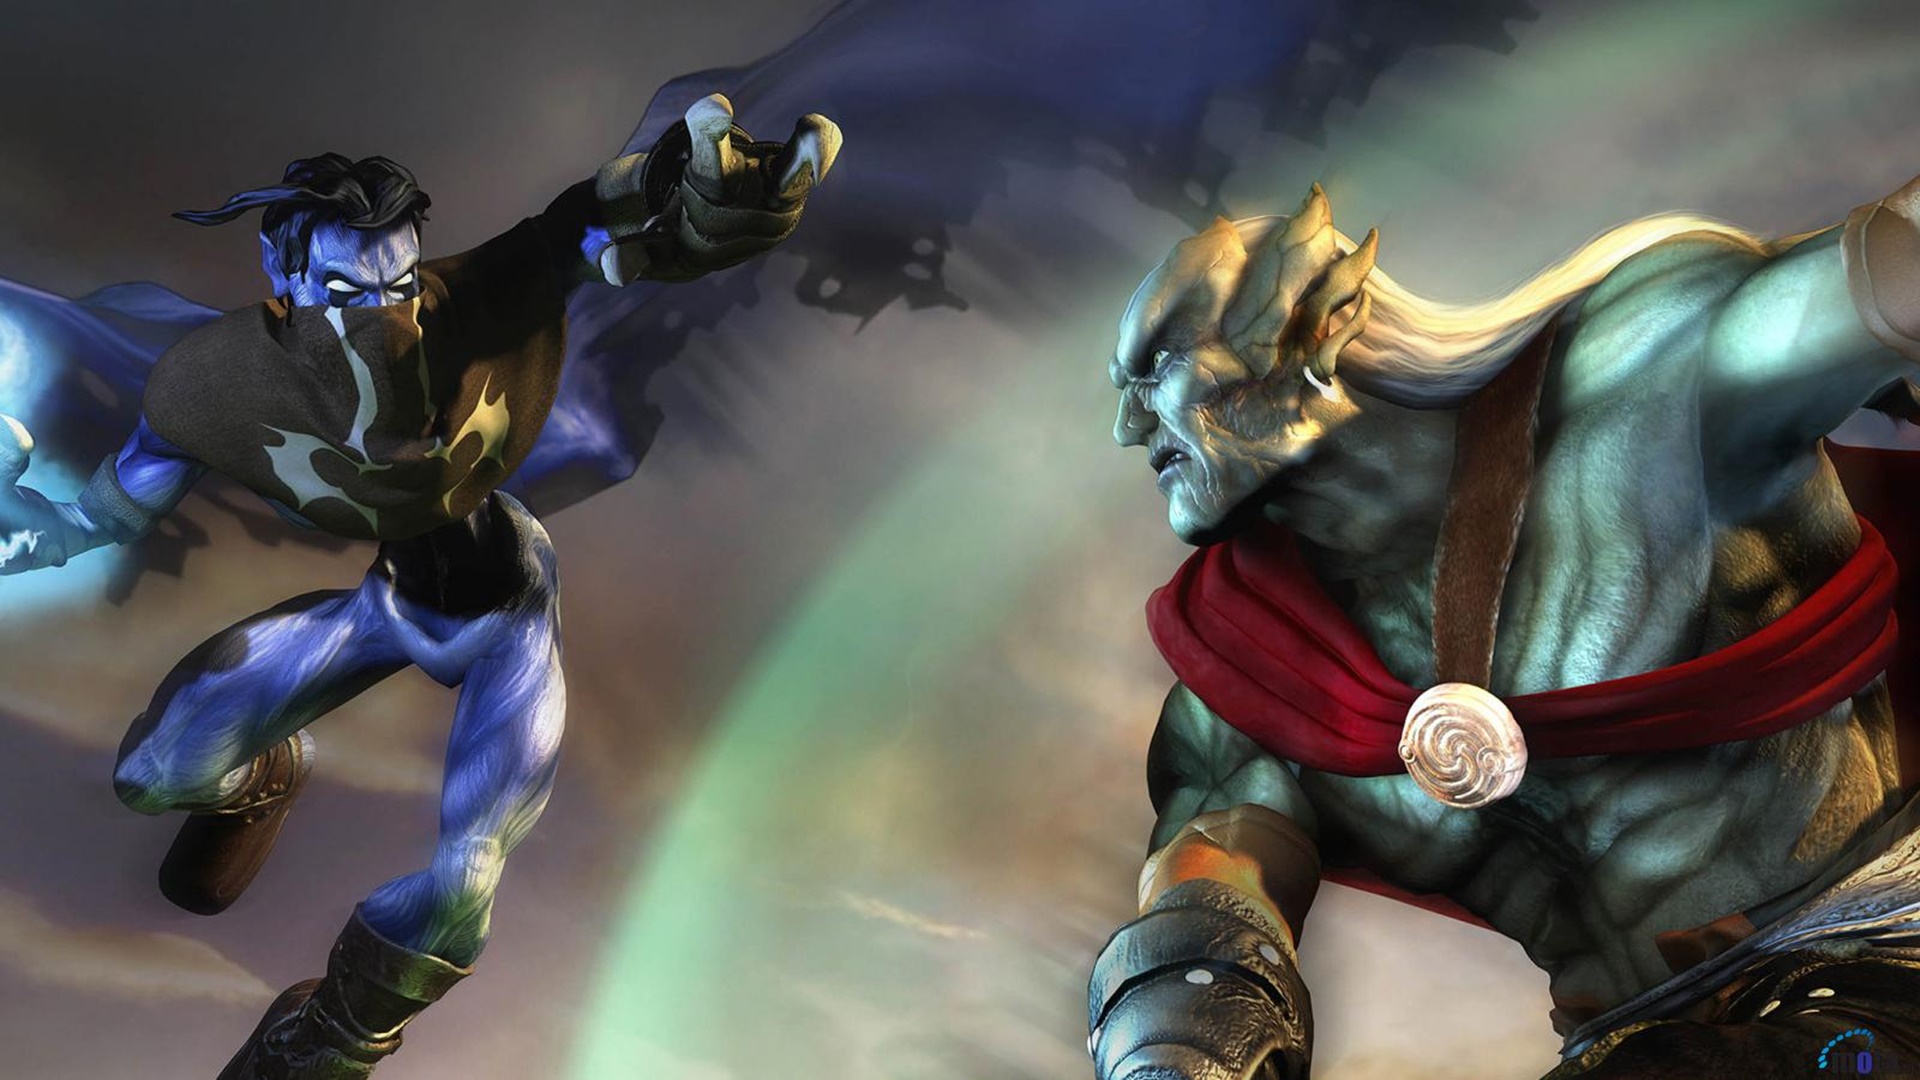 KainとRazielの戦い、PCで最高の吸血鬼ゲームの1つであるKainのレガシーの主人公